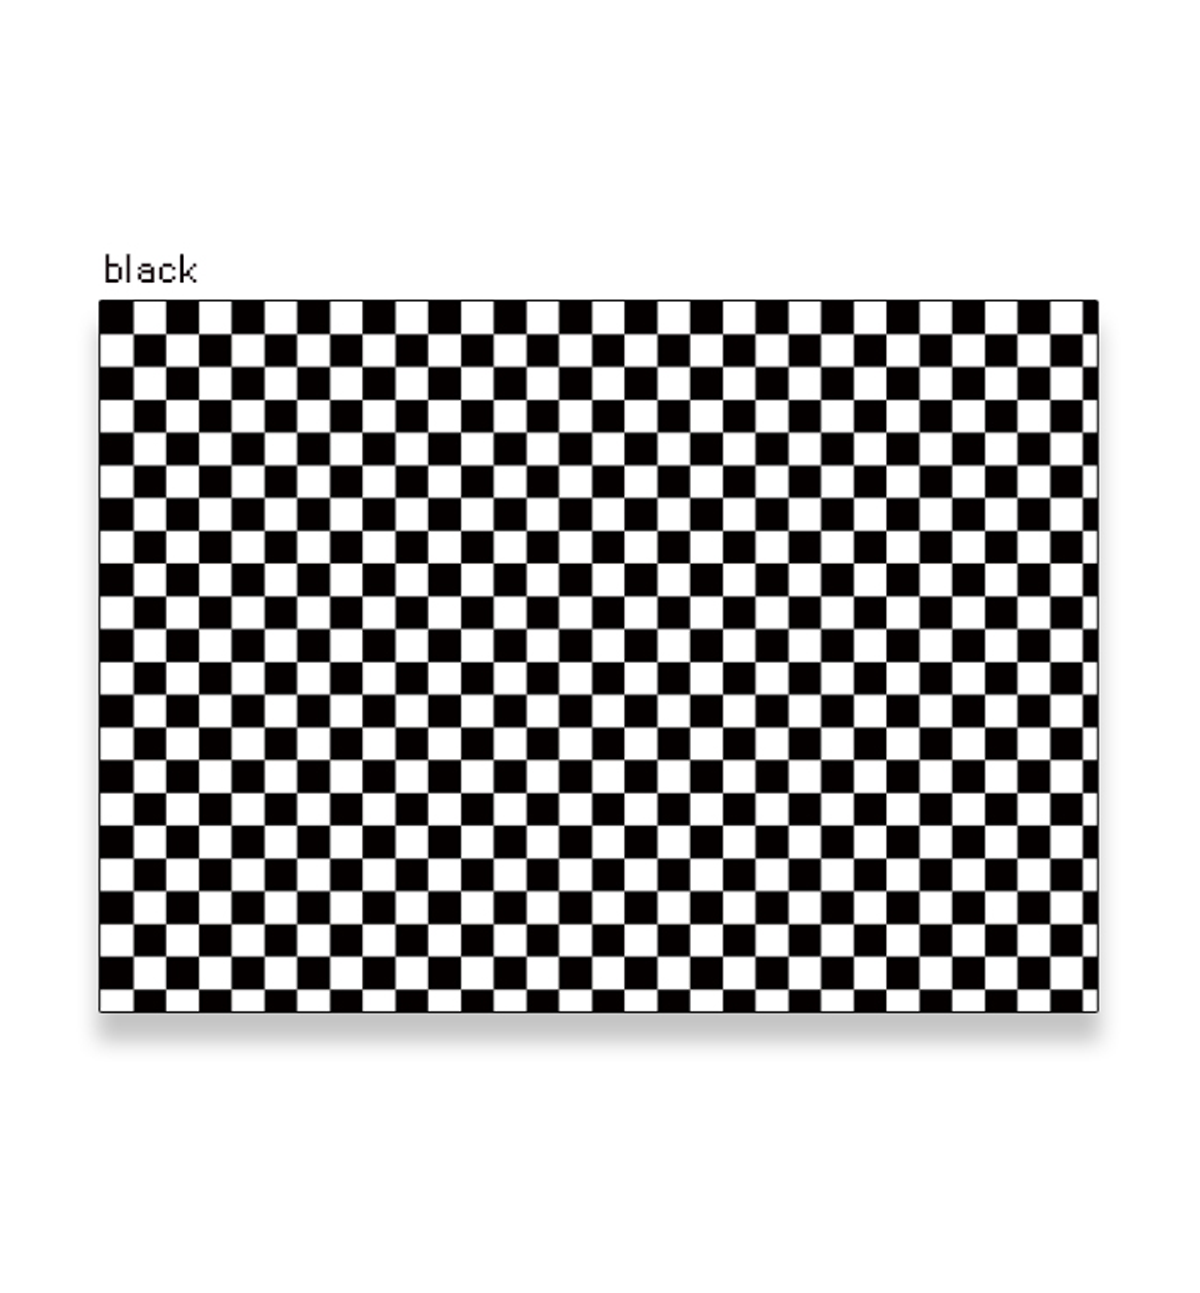 A4 Mini Checkerboard Paper [3 Colors]